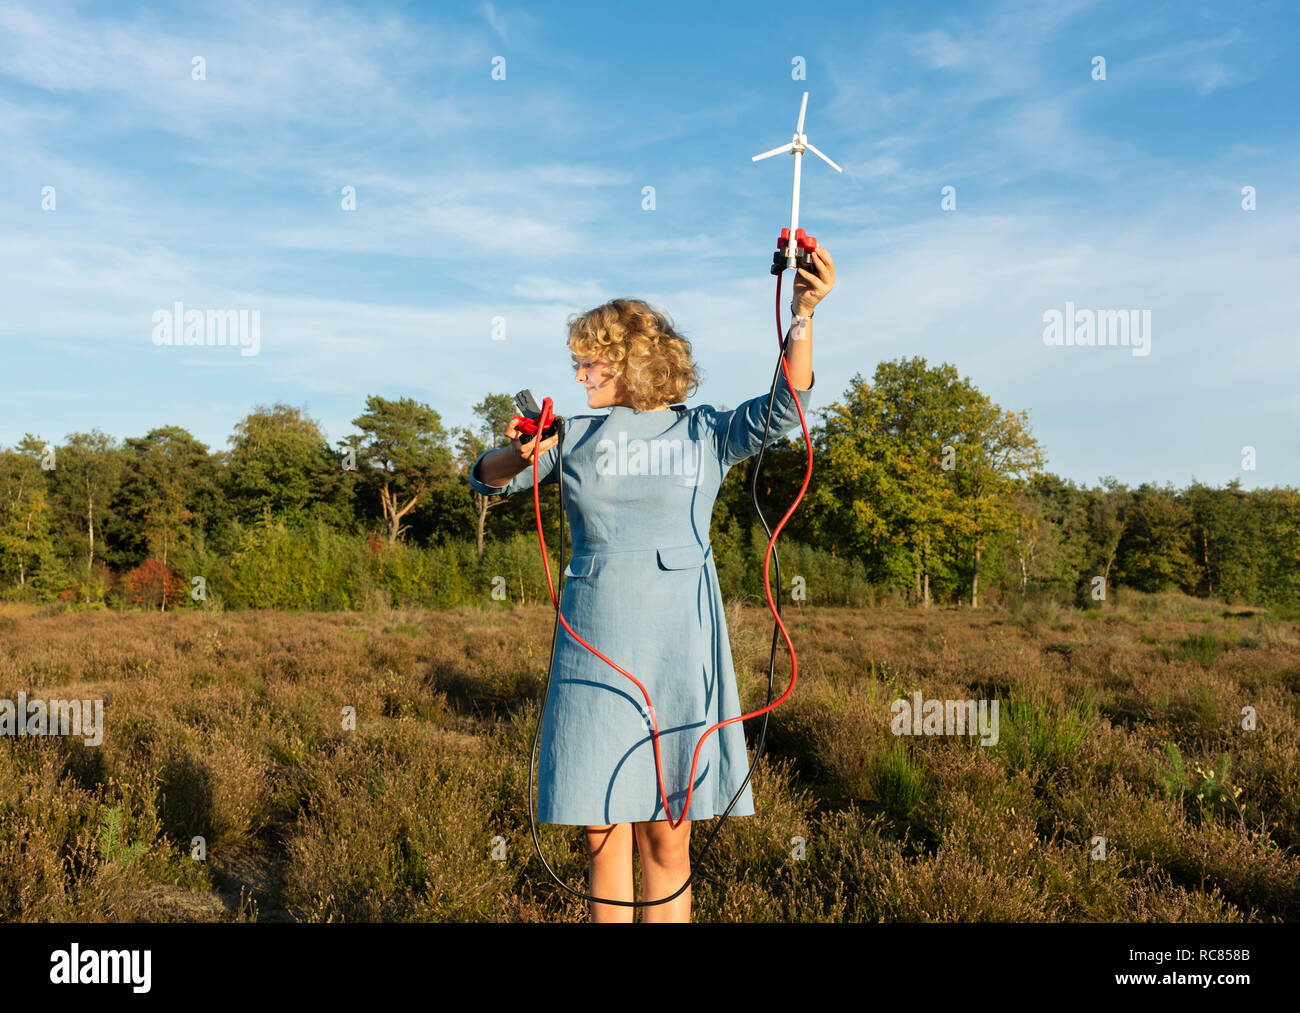 Ragazza adolescente alimentazione luce LED in miniatura con turbina a vento, Paesi Bassi Foto Stock